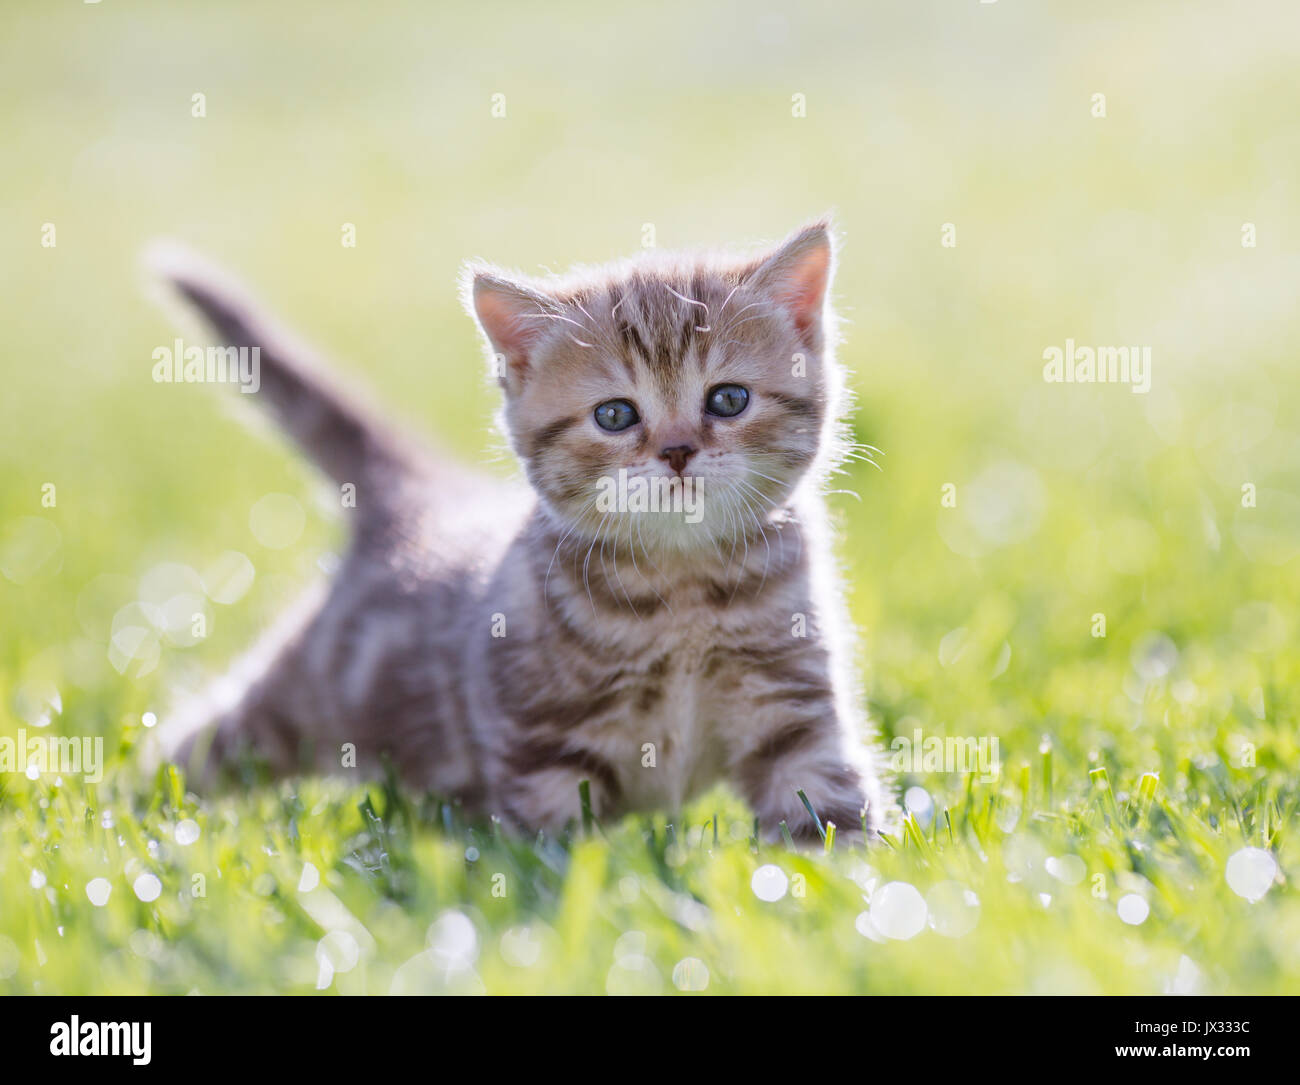 Funny jeune chat debout dans l'herbe verte Banque D'Images